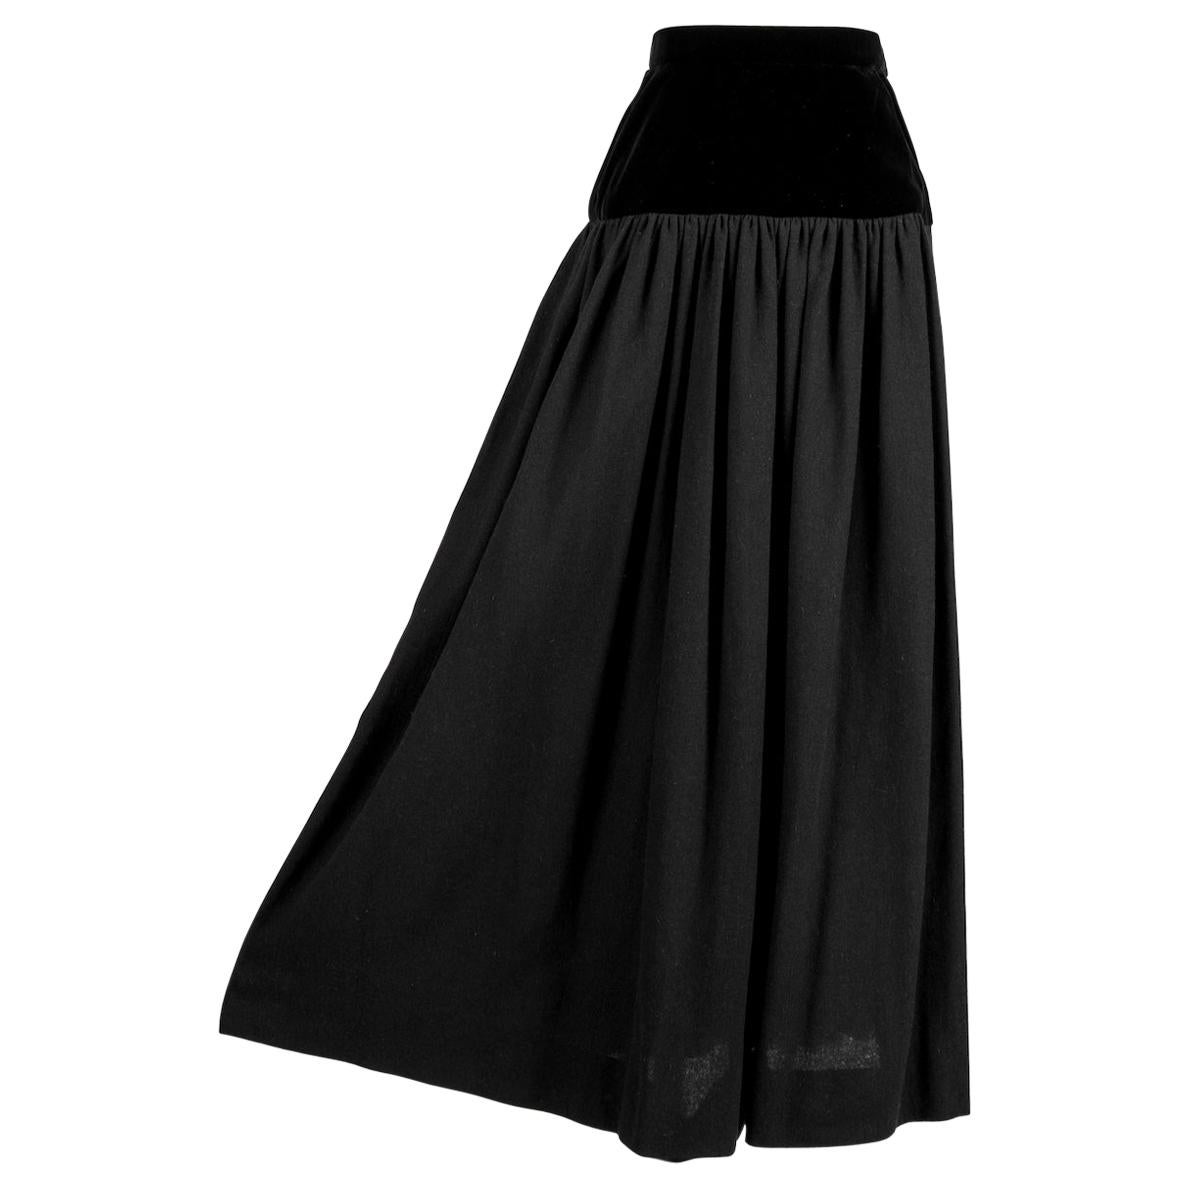  YVES SAINT LAURENT YSL 1976-77 Russian Collection Black Wool & Velvet Skirt